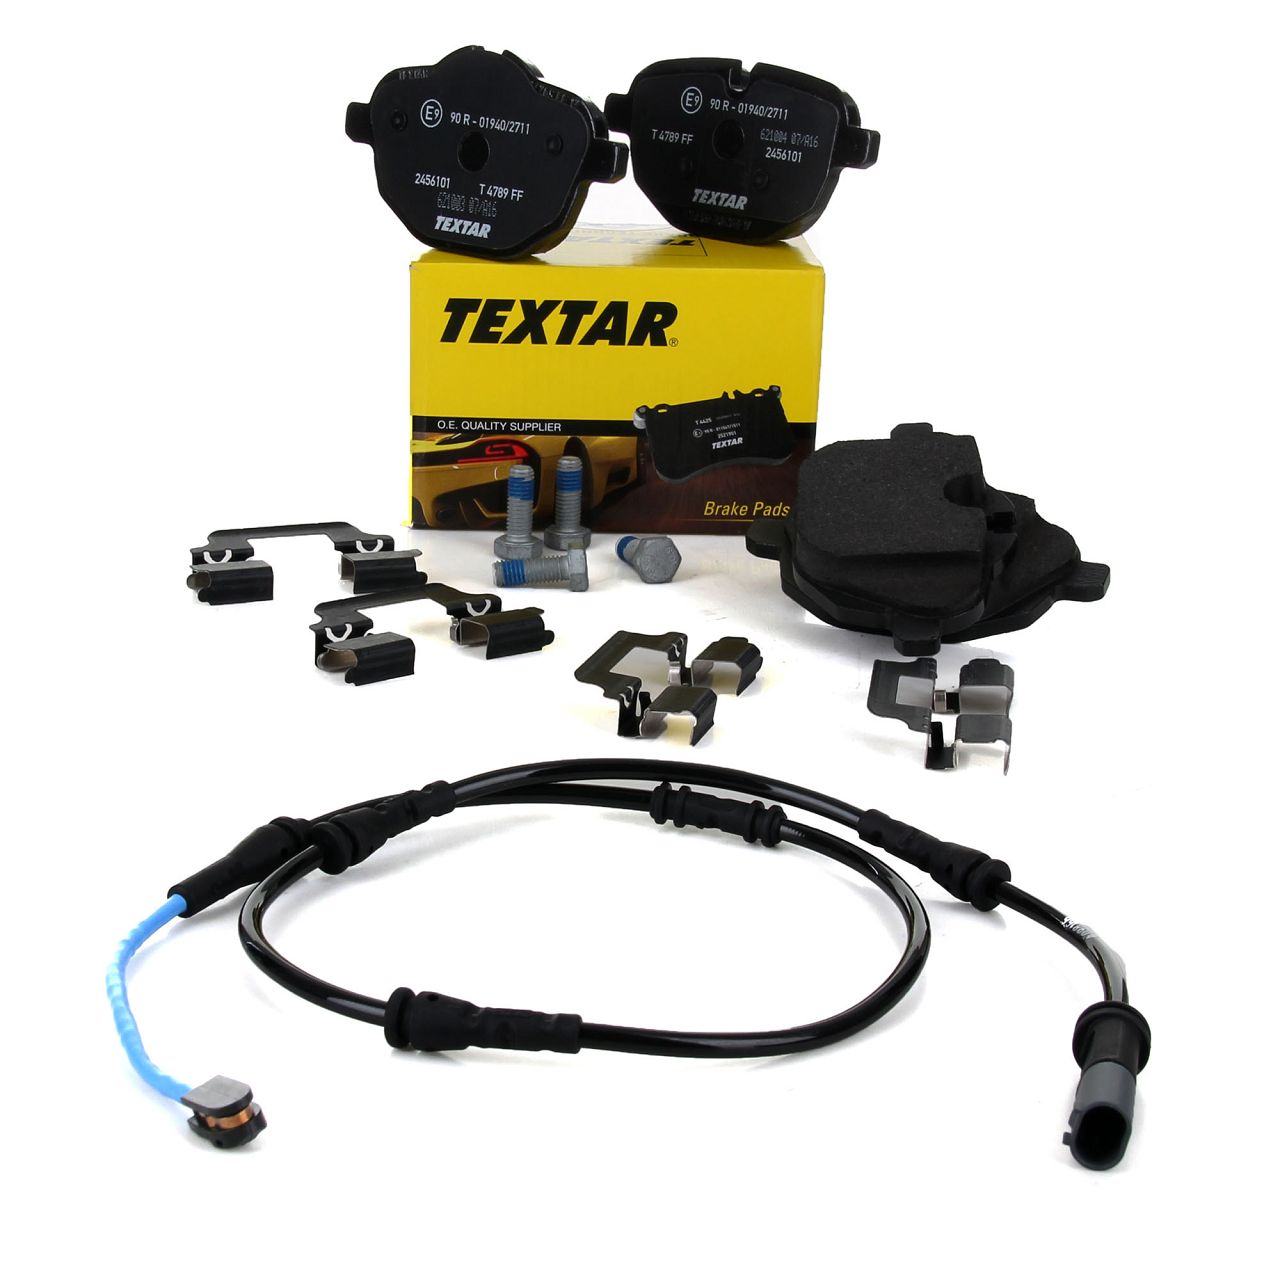 TEXTAR 2456101 Bremsbeläge + Warnkontaktsensor BMW 5er F10 Limo 520-535i 518-530d hinten